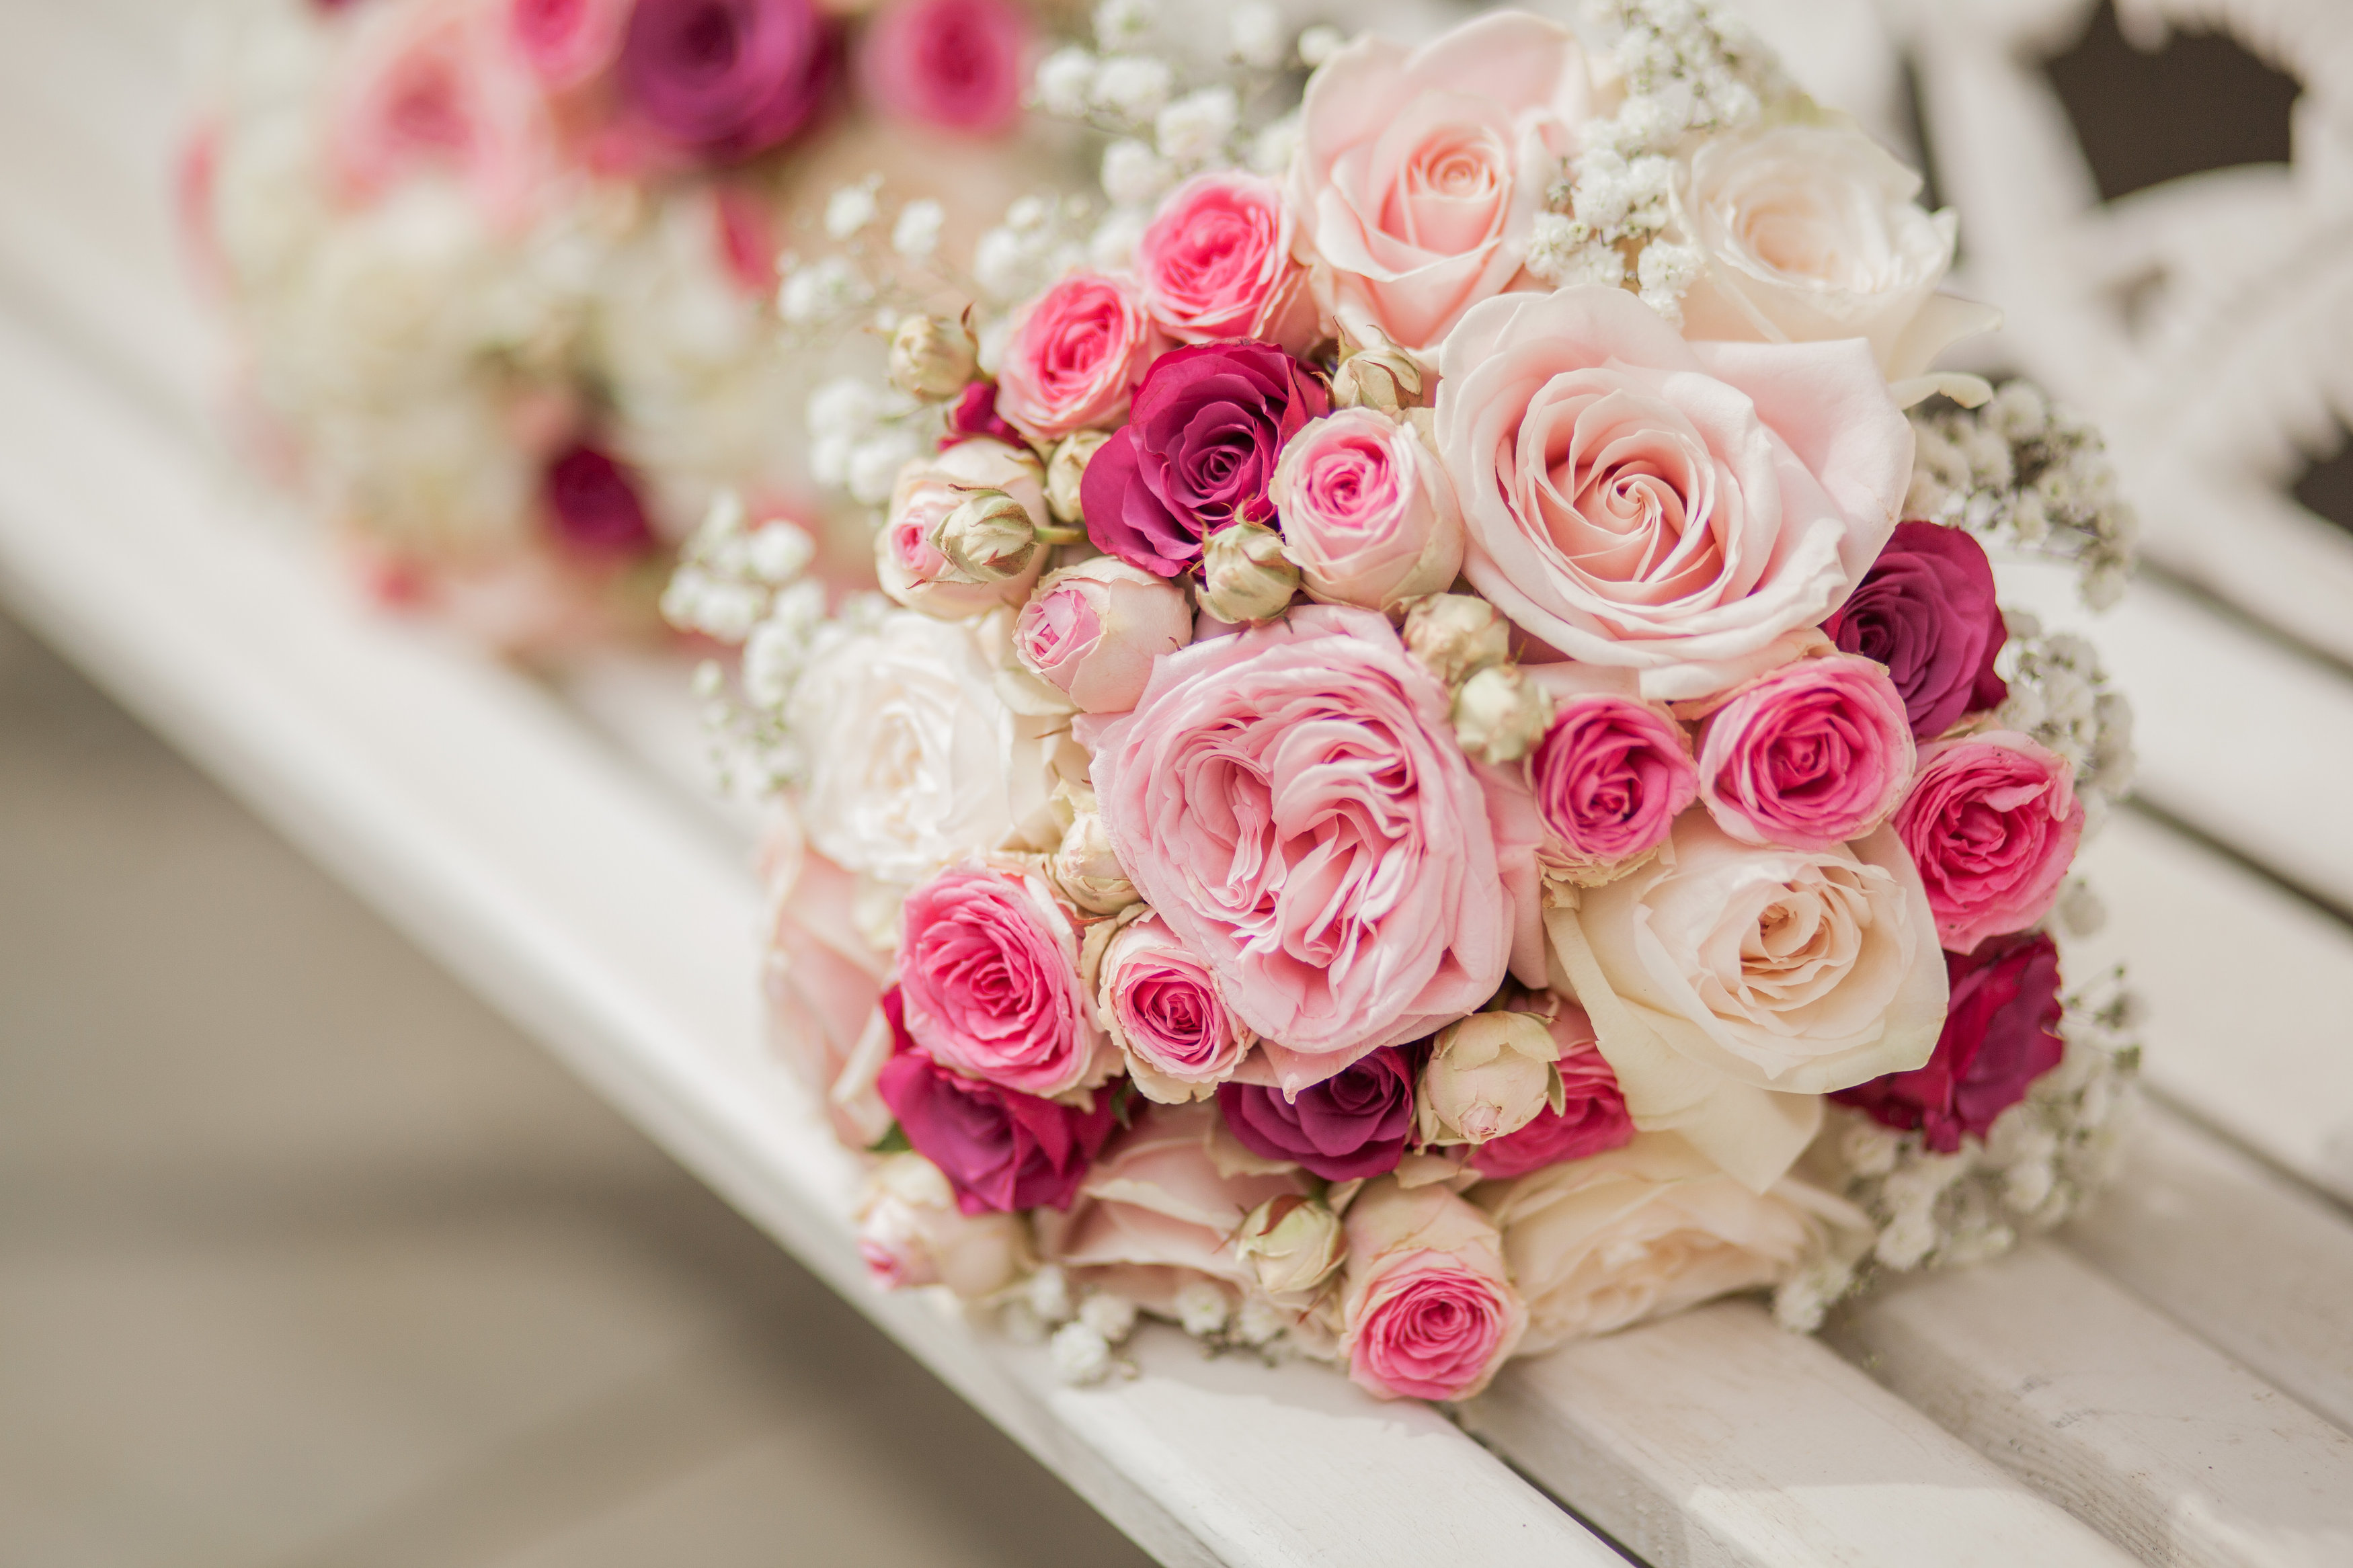 Hoa cưới cầm tay màu hồng nhạt được nhiều cô dâu yêu thích